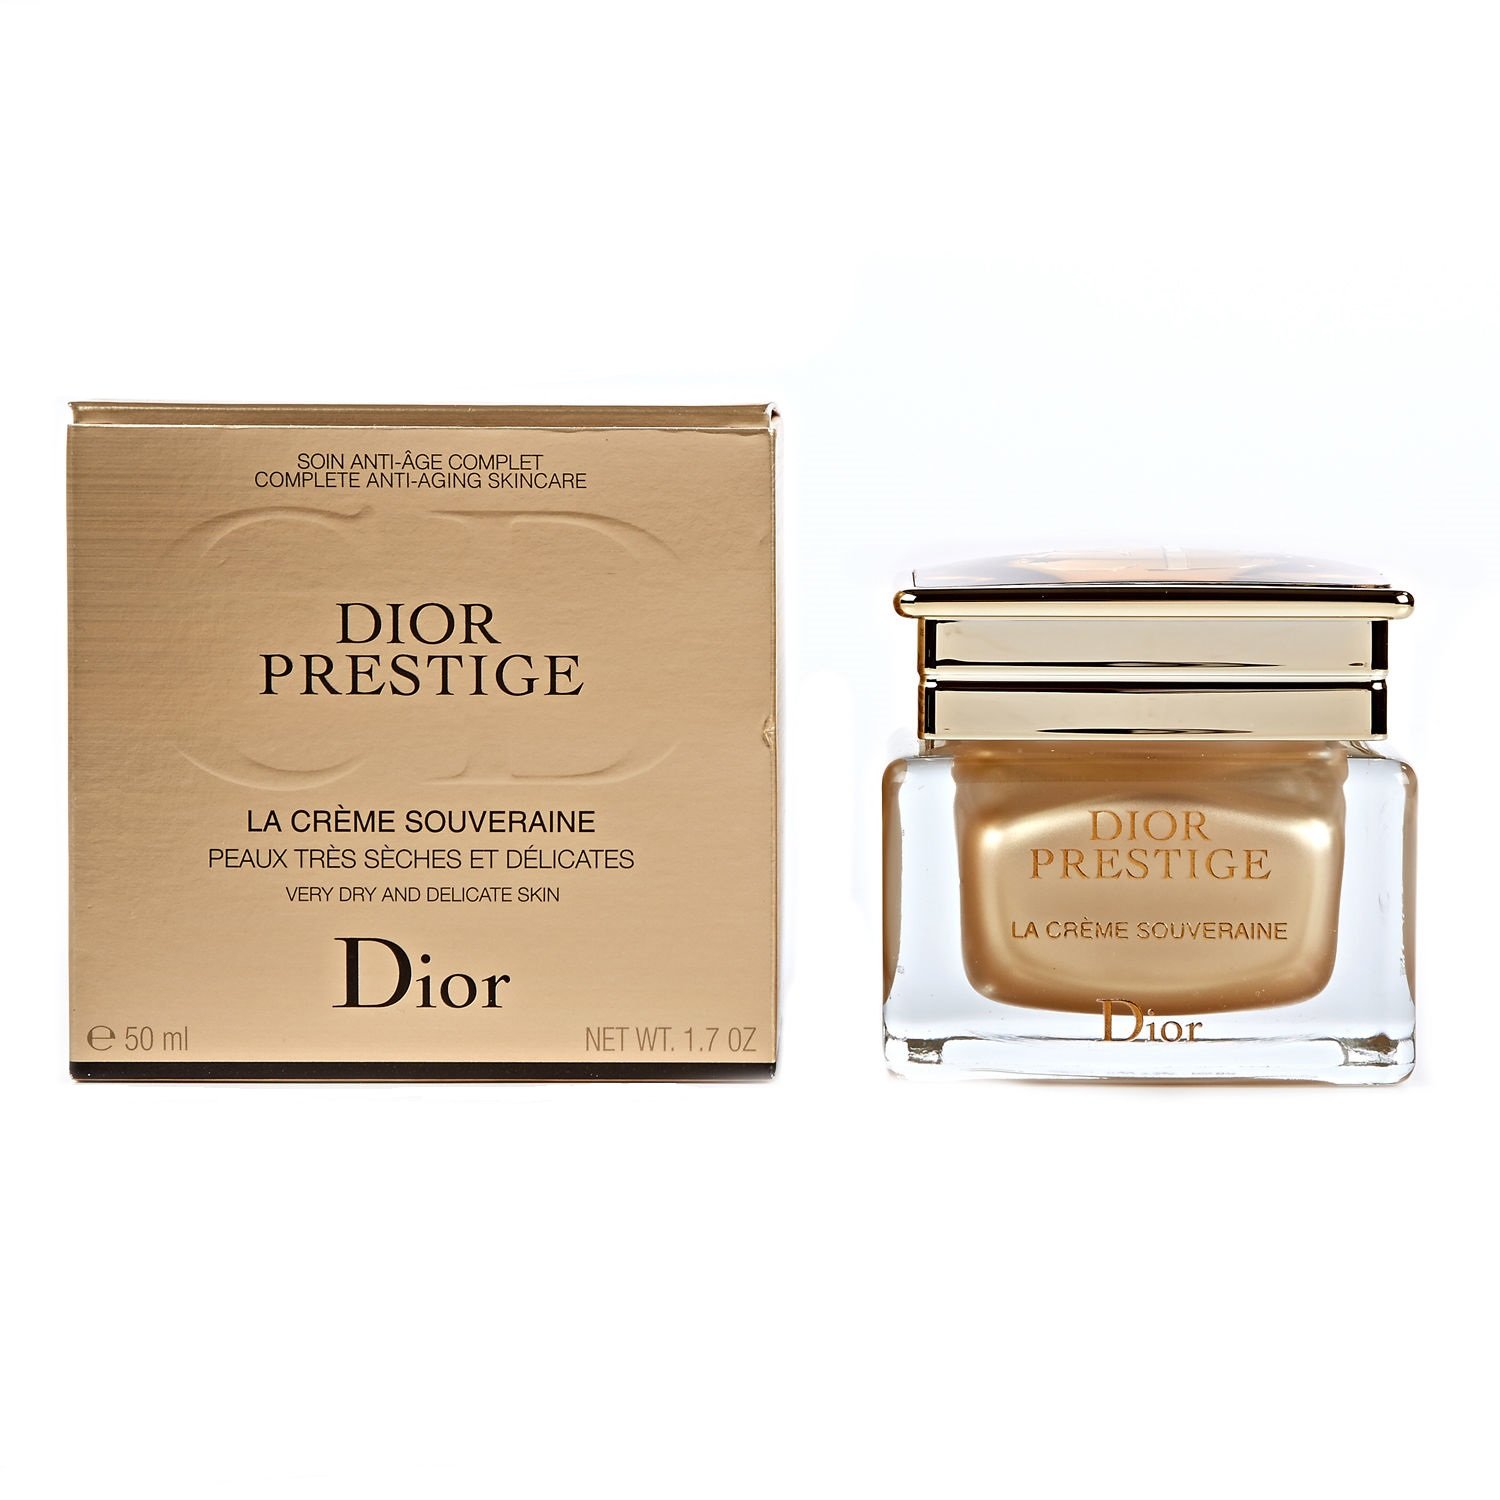 Dior Prestige Face Scrub